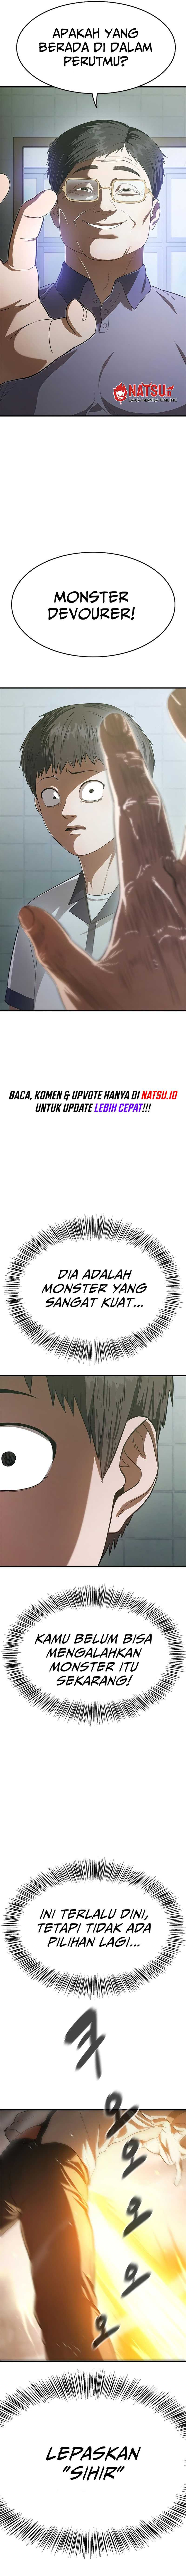 Monster Eater Chapter 8